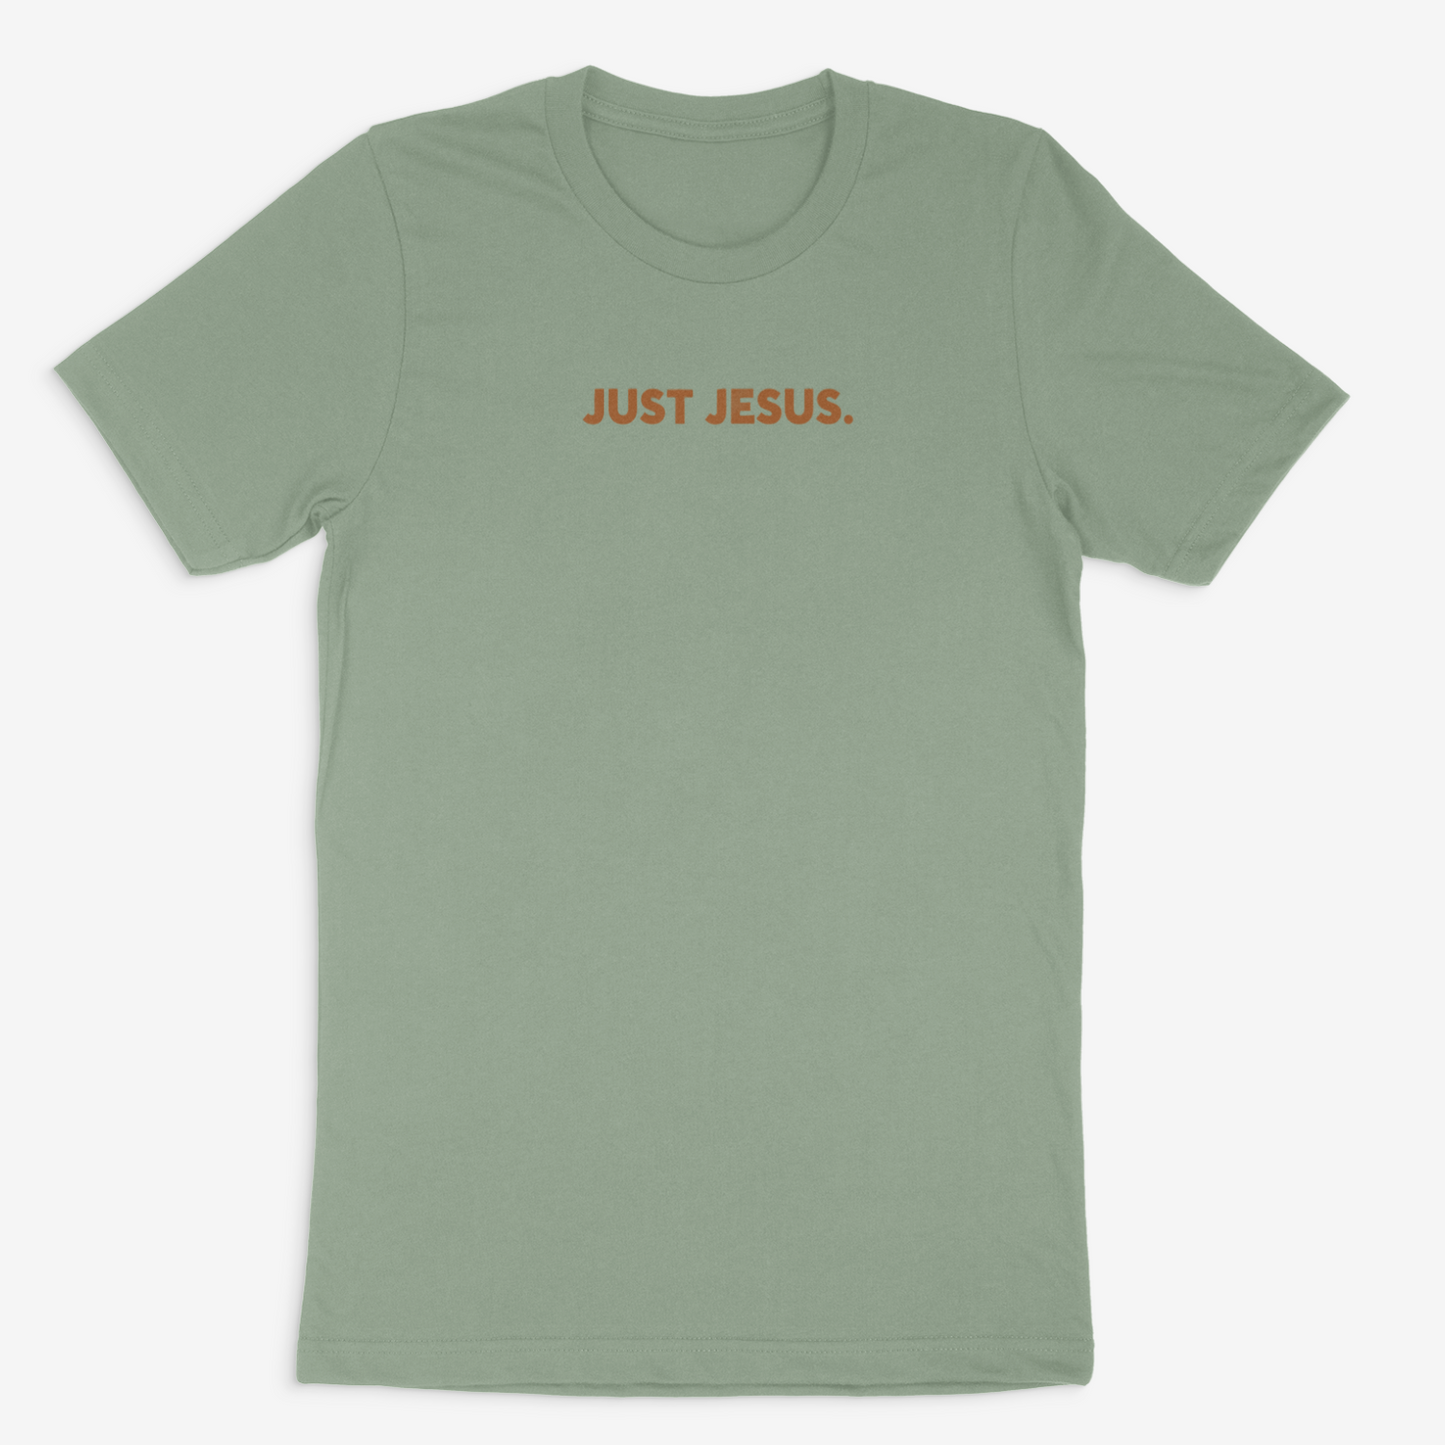 Just Jesus Tee (Medium Brown)